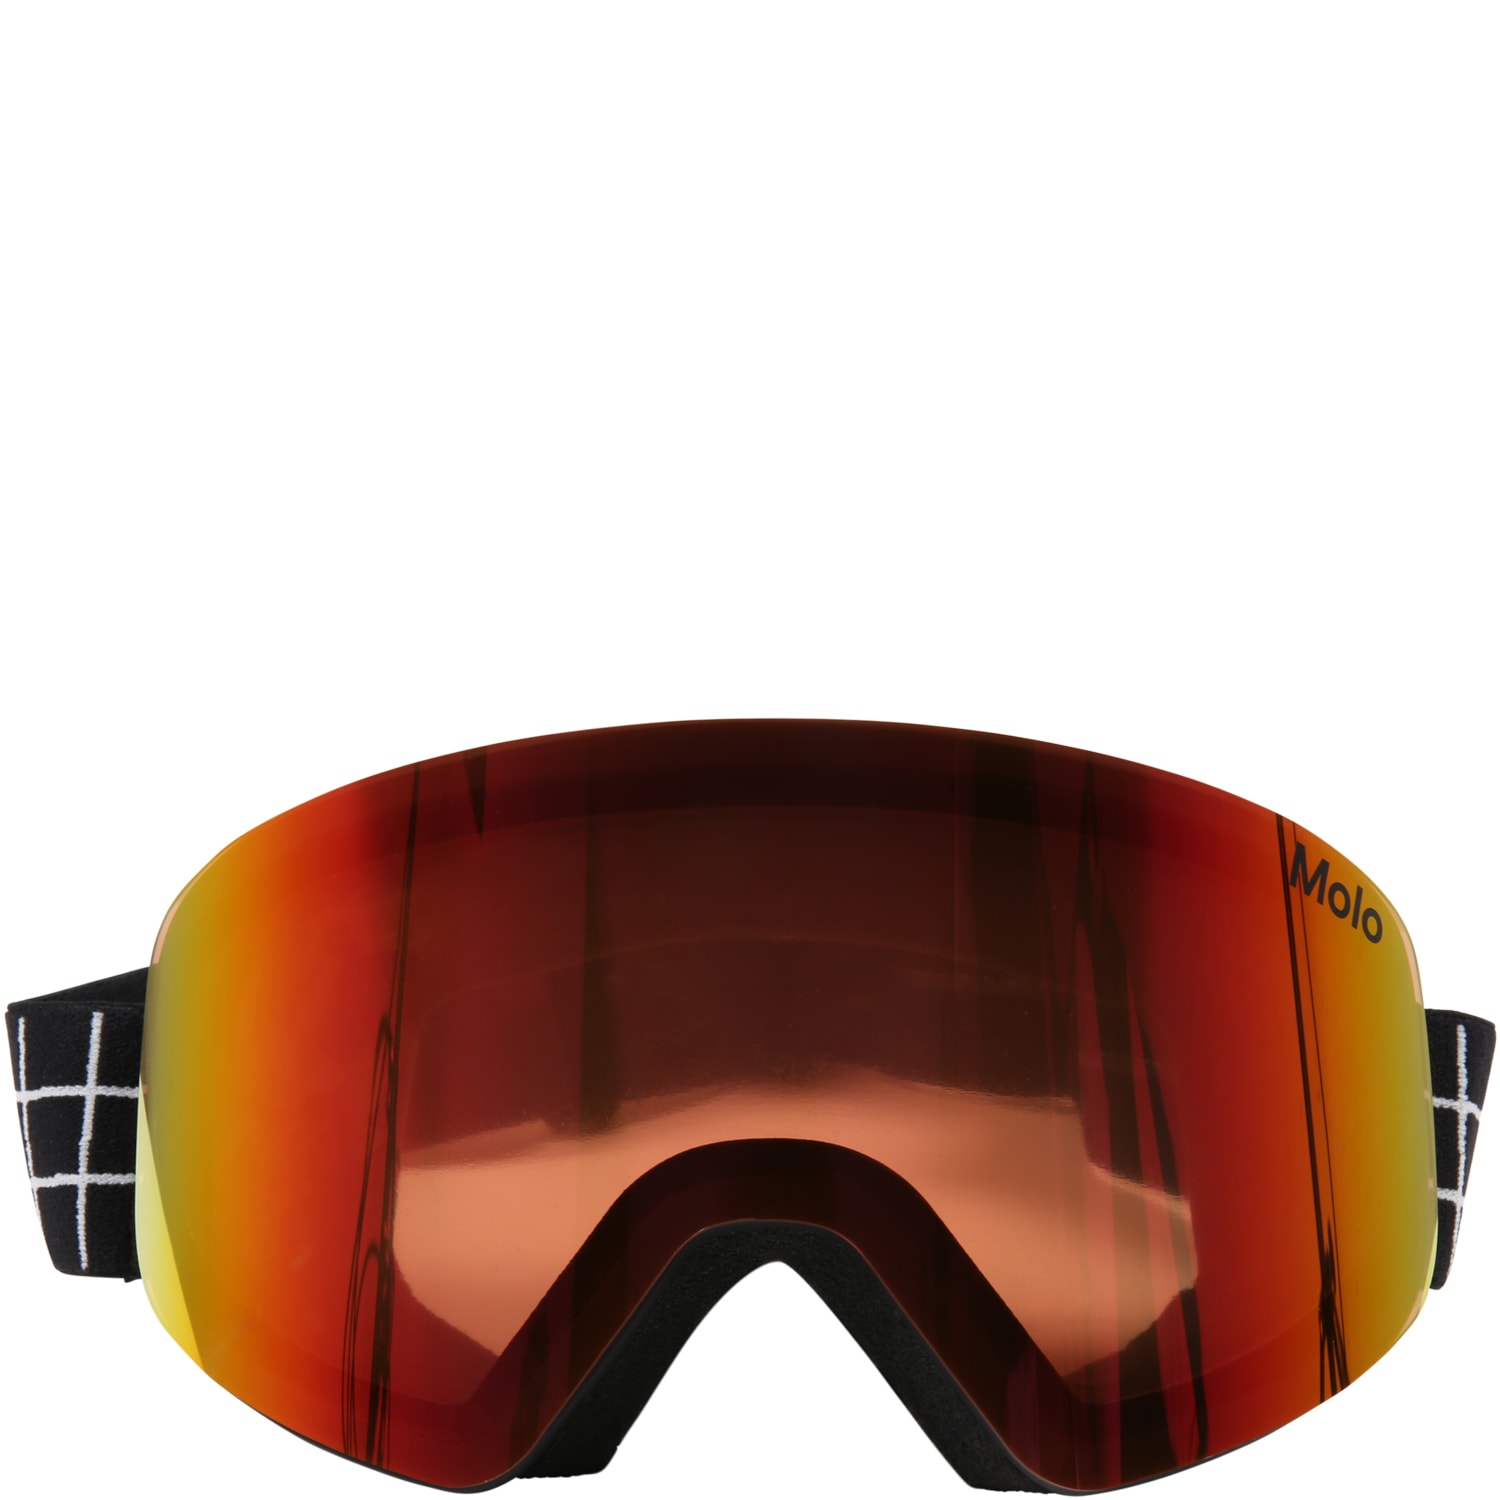 Molo Multicolor Ski Mask For Kids